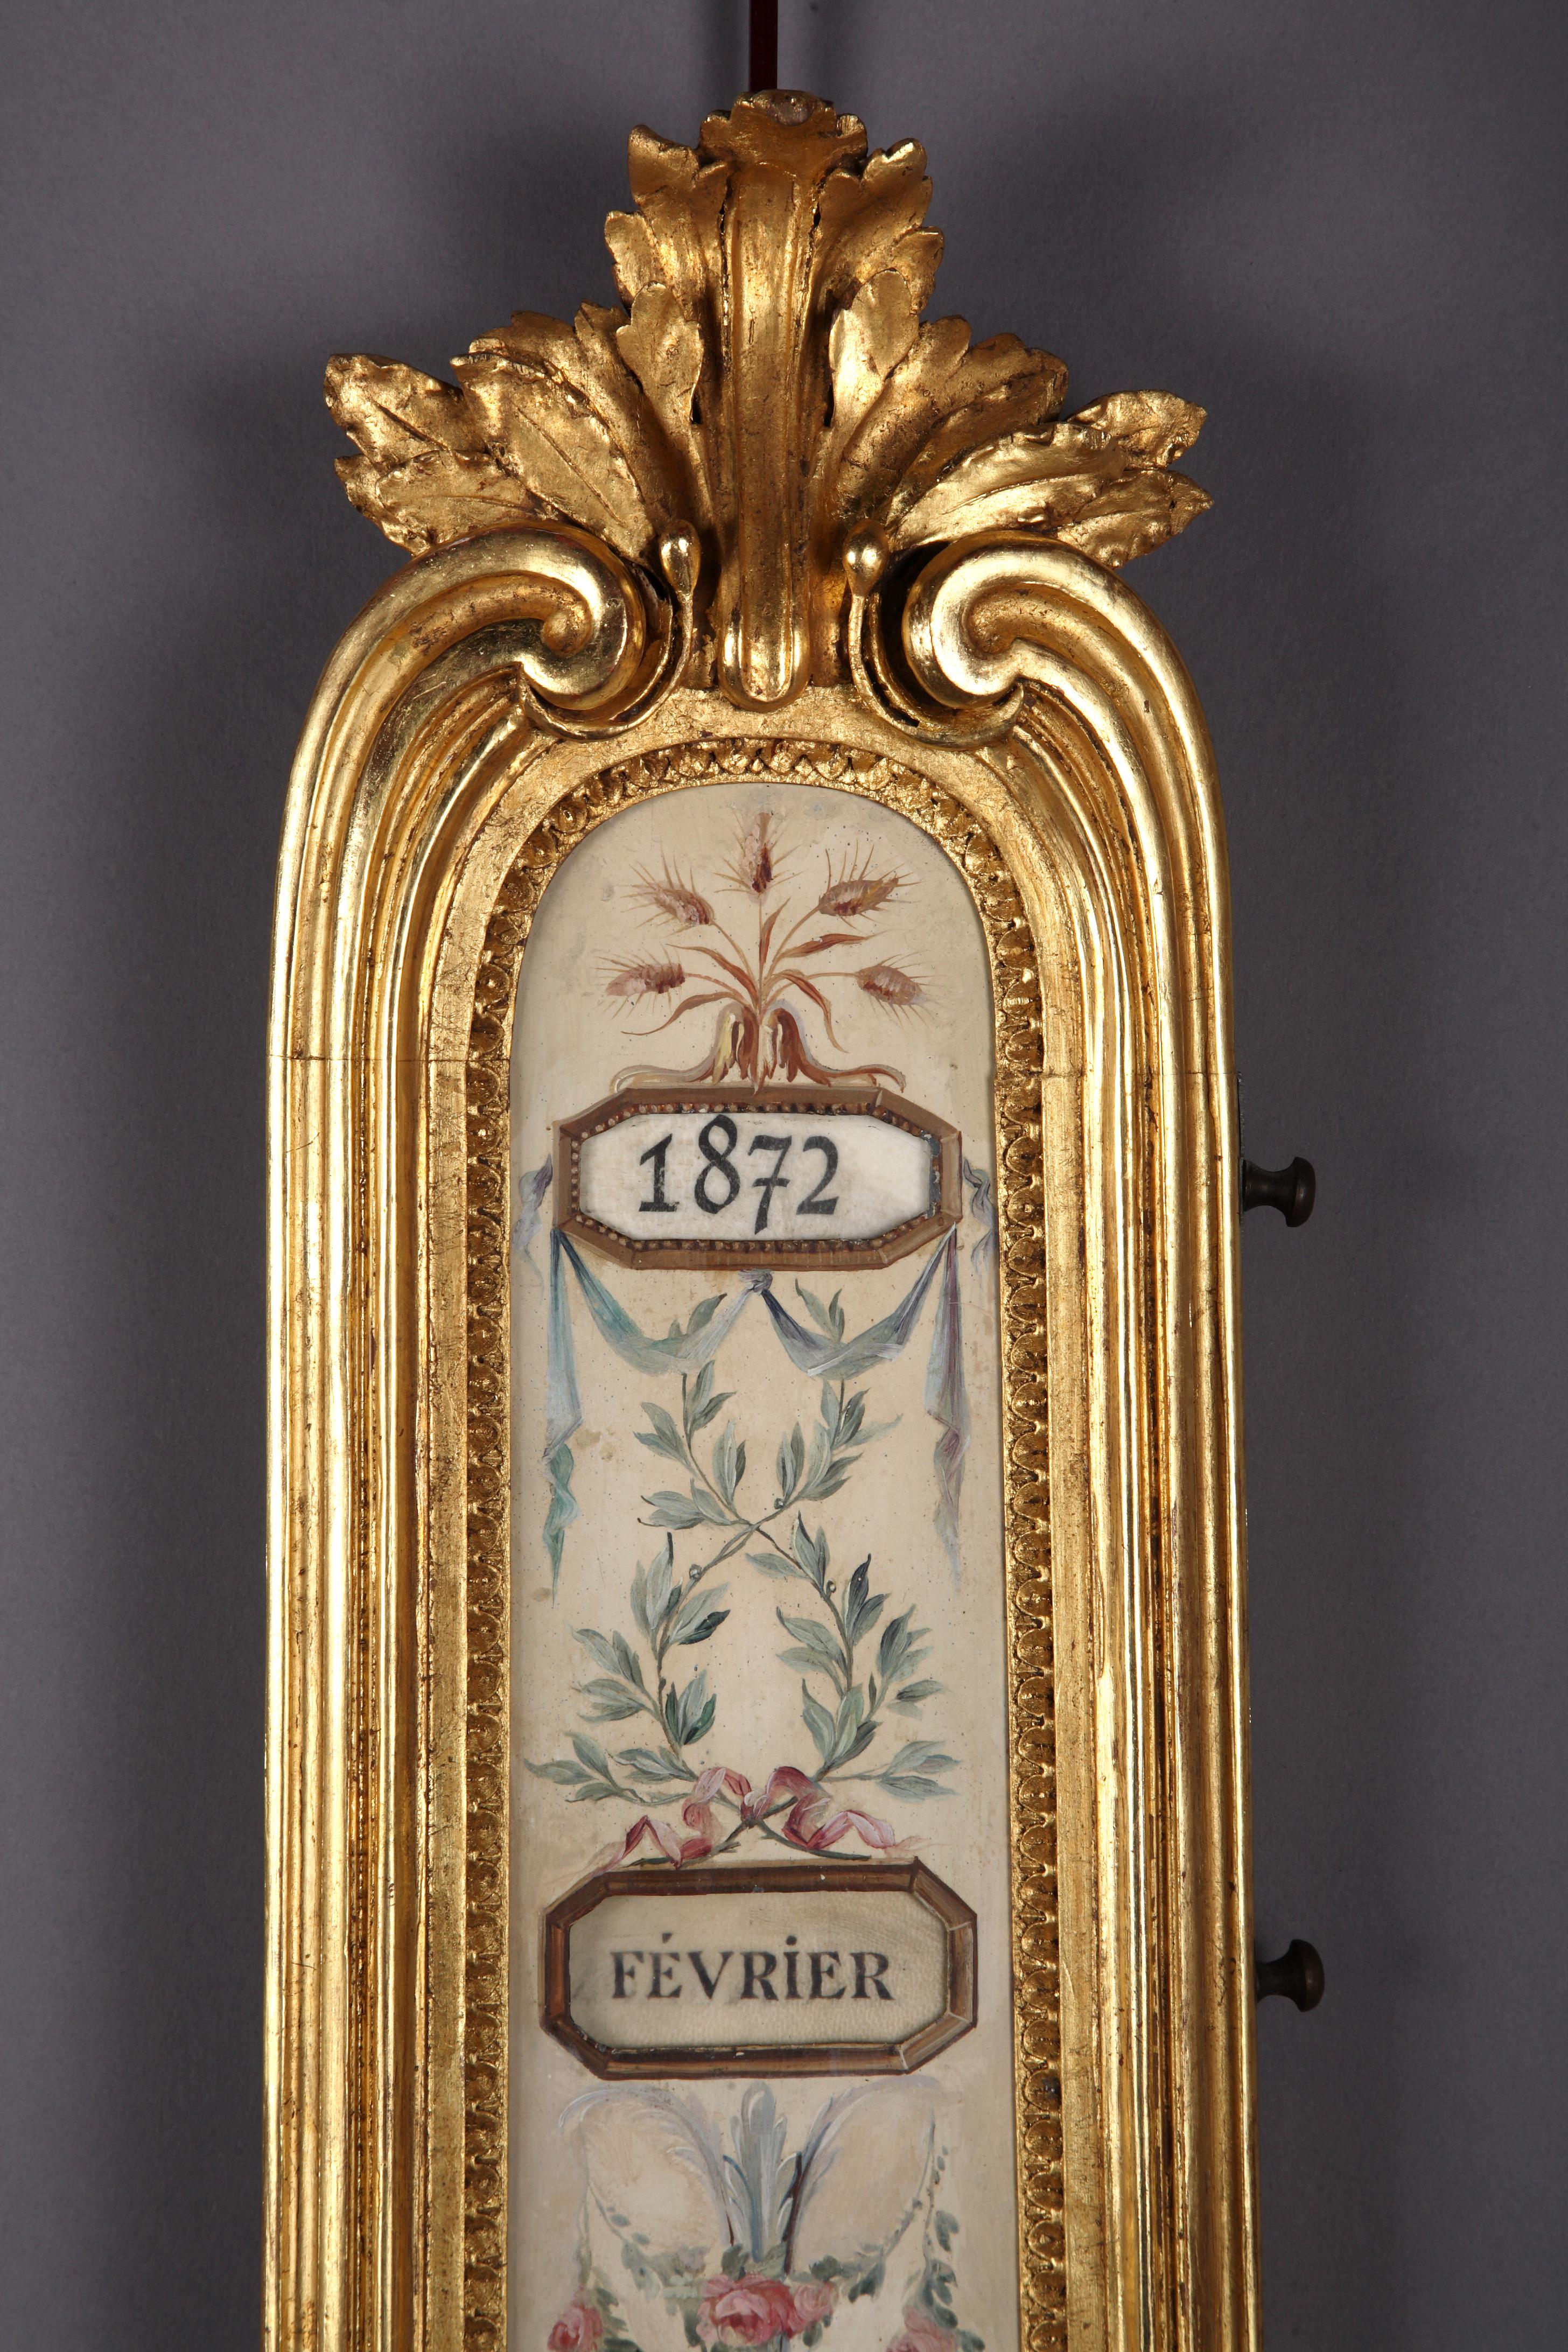 Elégant ensemble de style Louis XVI comprenant un thermomètre et un calendrier perpétuel attribué à F. Linke. Chacune est constituée d'une plaque en métal, peinte de motifs floraux sur fond beige : pour le calendrier, quatre ouvertures affichant